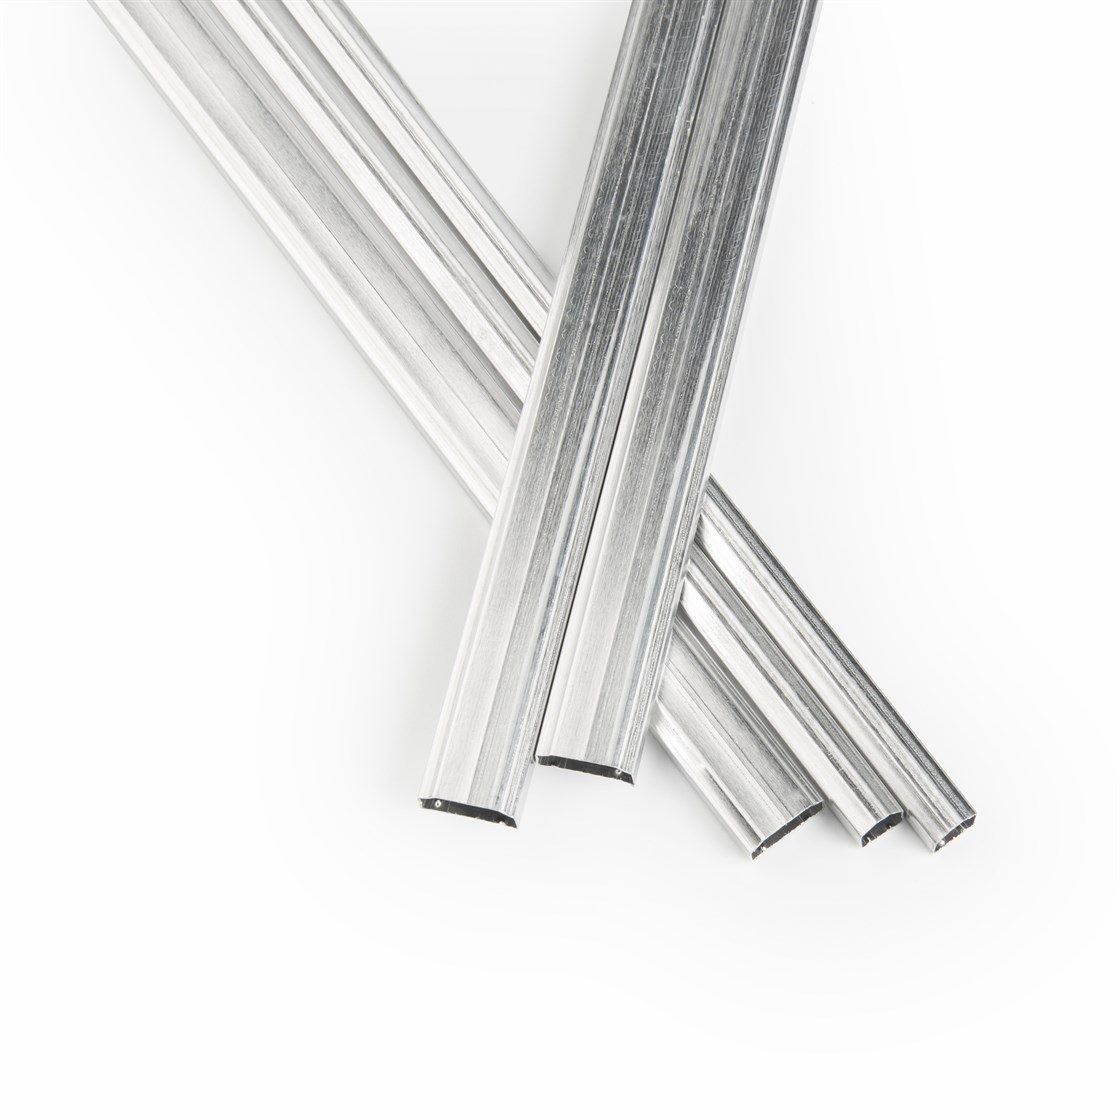 Aluminium Spacer, Spacer Bars